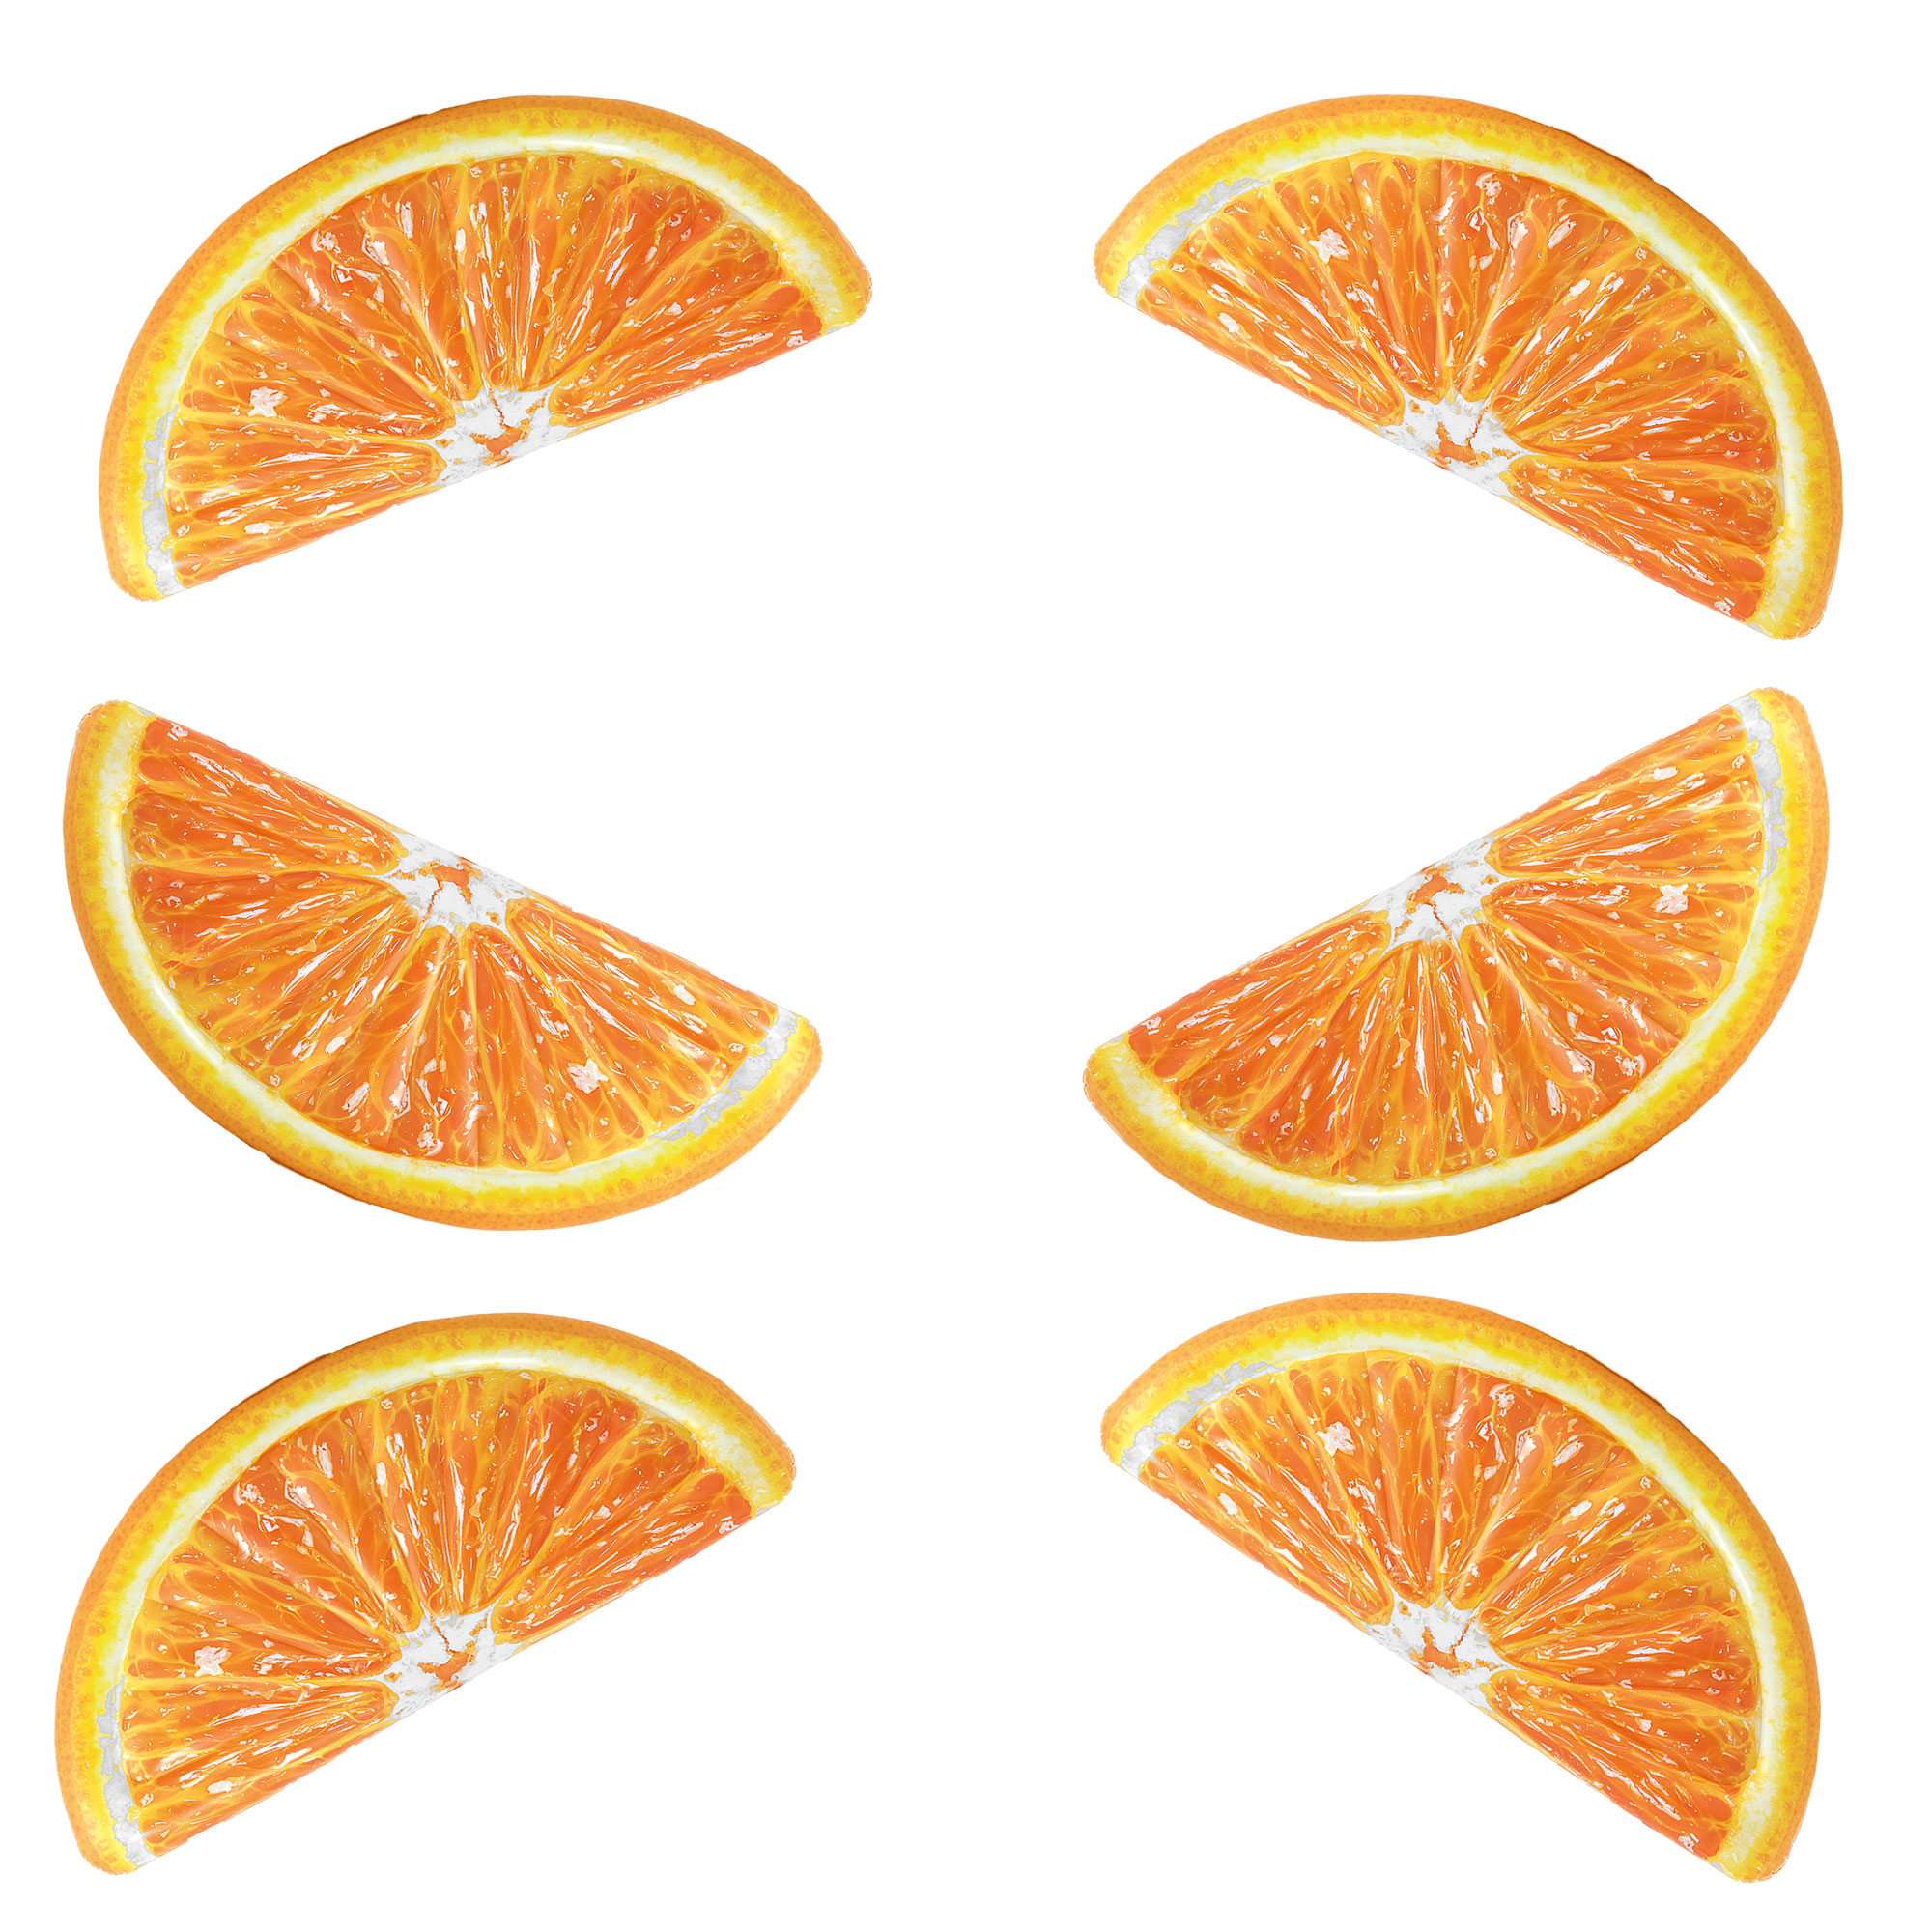 Долька апельсина по клеточкам